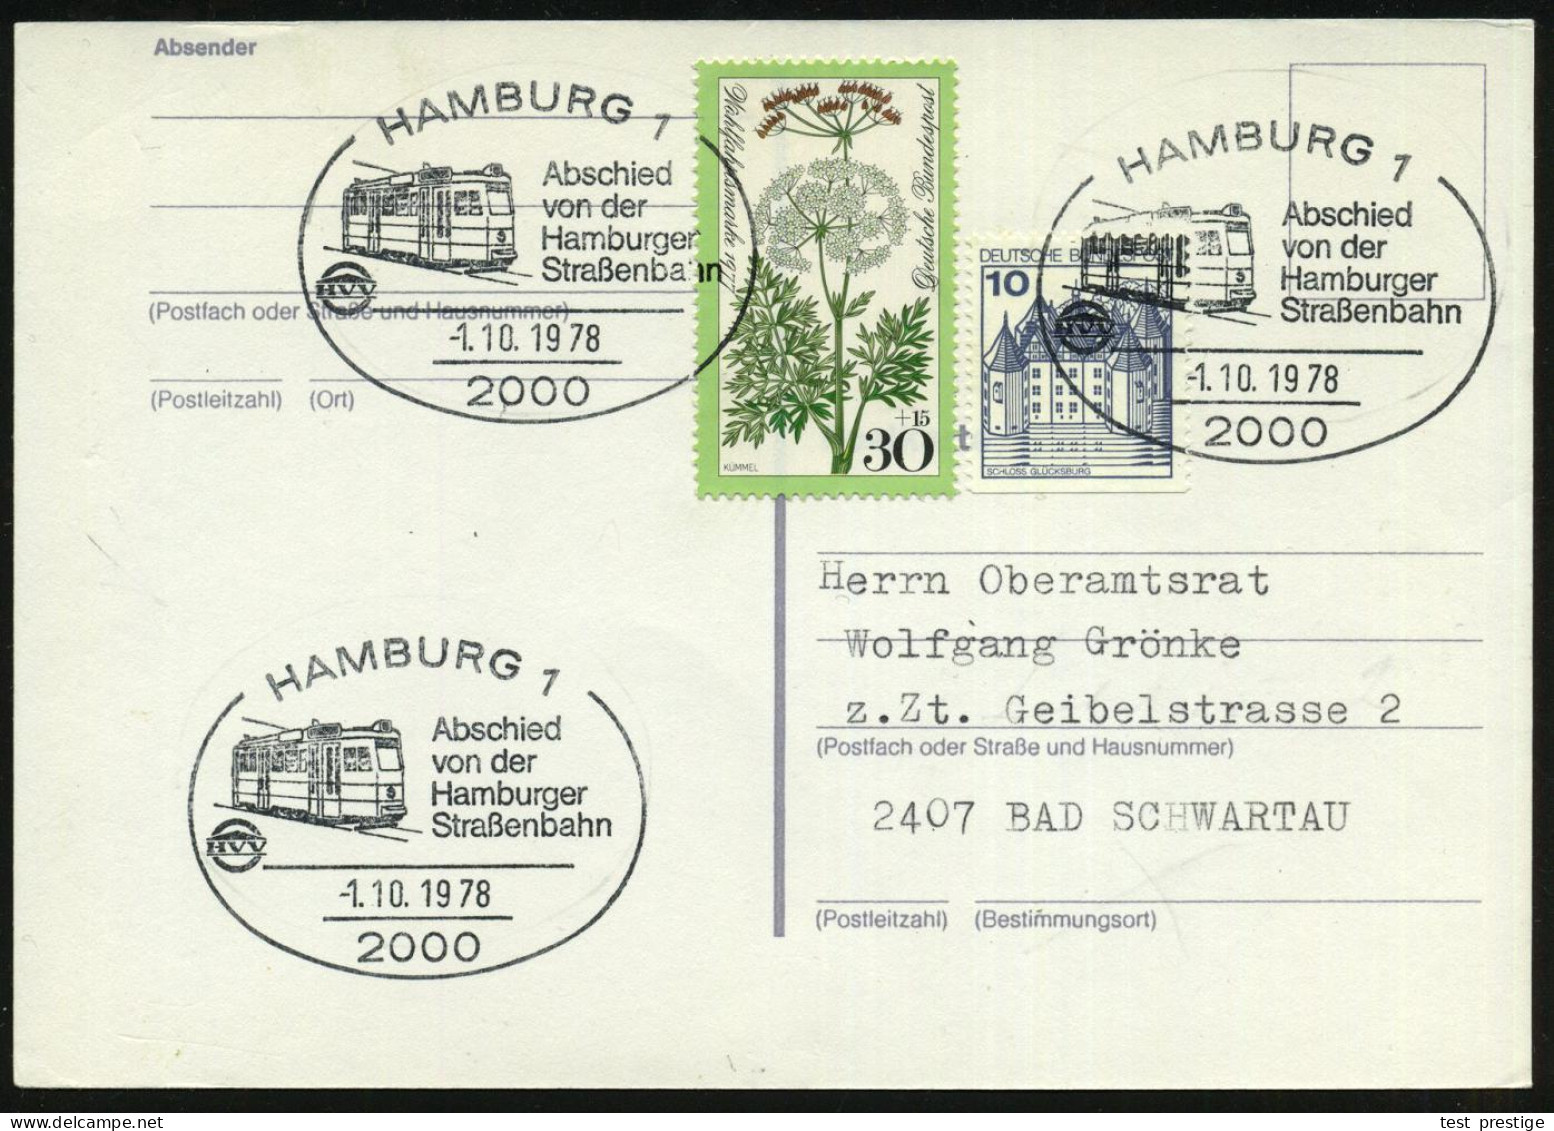 2000 HAMBURG 1/ Abschied/ Von Der/ Hamburger/ Straßenbahn 1978 (1.10.) SSt = Moderne Straßenbahn  3x Klar Auf Inl.-Karte - Tramways